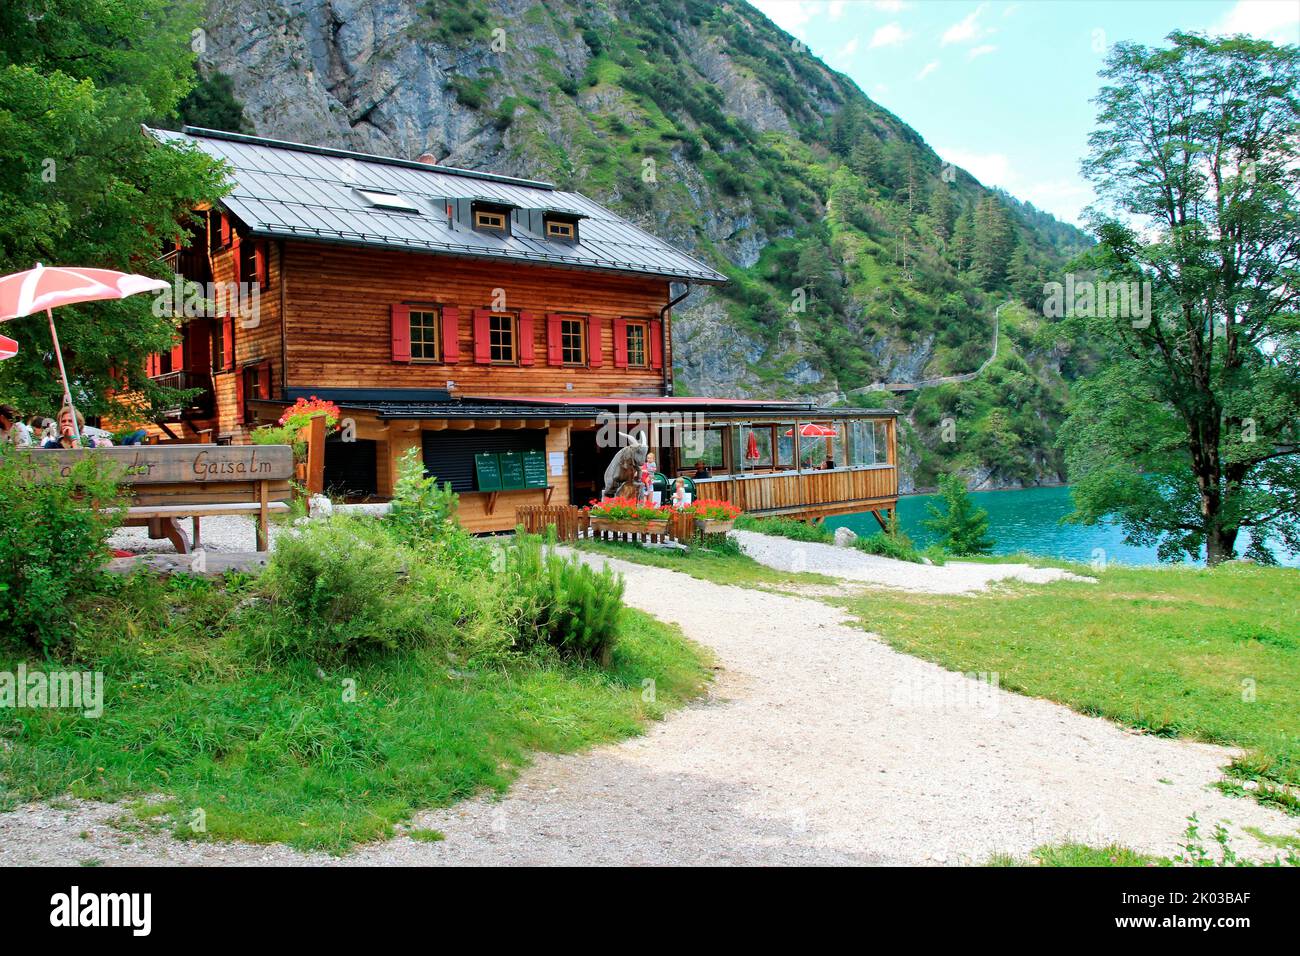 Gaisalm at Achensee, lake, inn, Tyrol, Austria Stock Photo